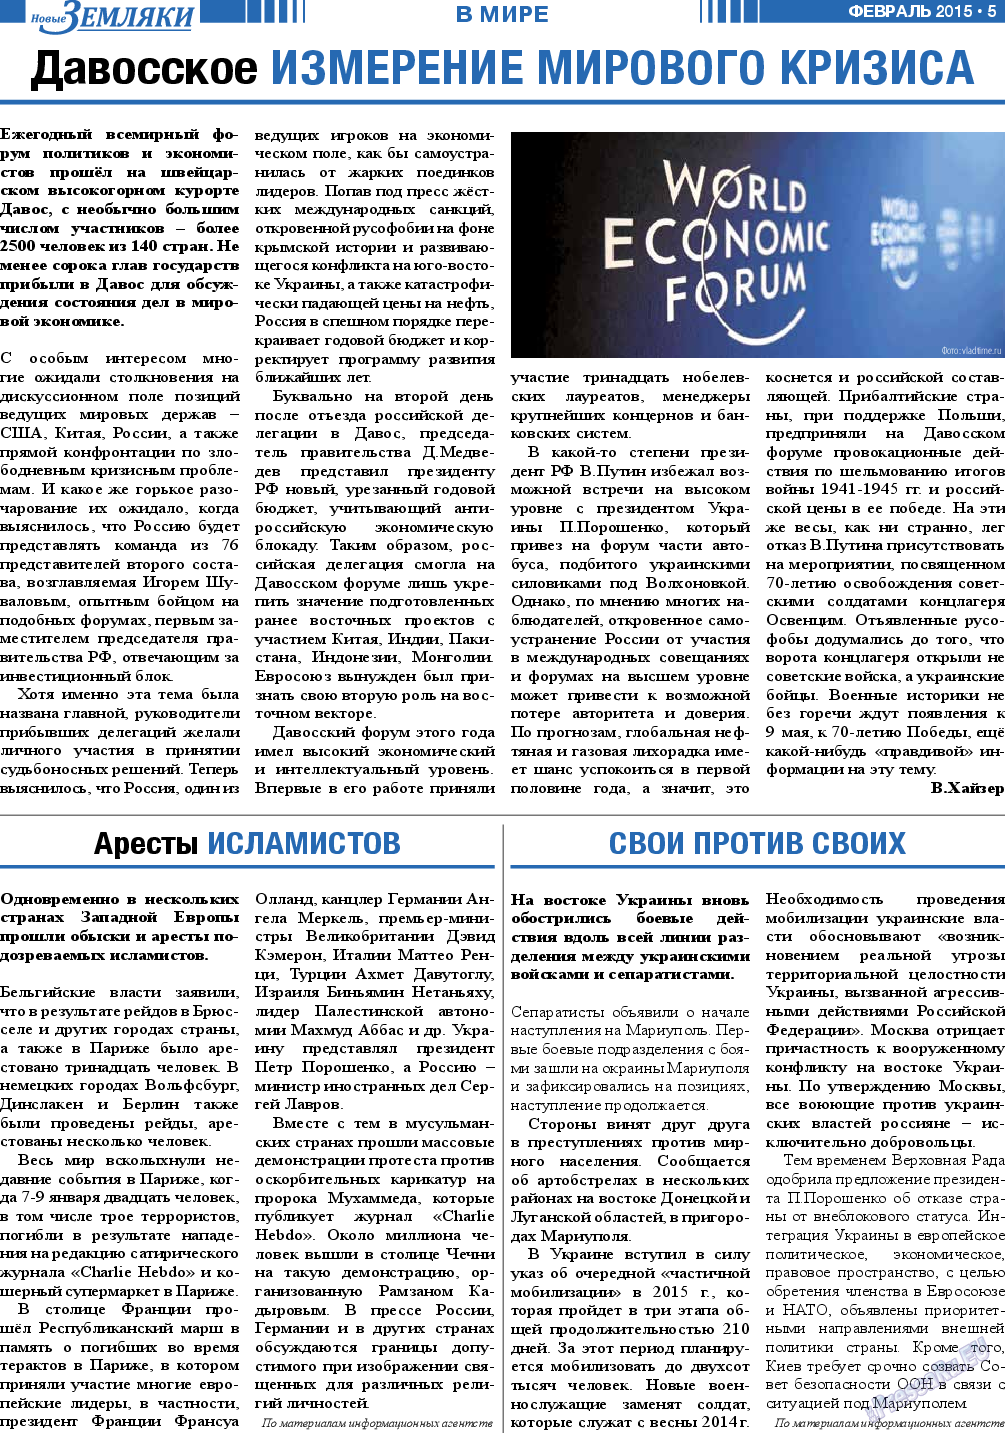 Новые Земляки, газета. 2015 №2 стр.5